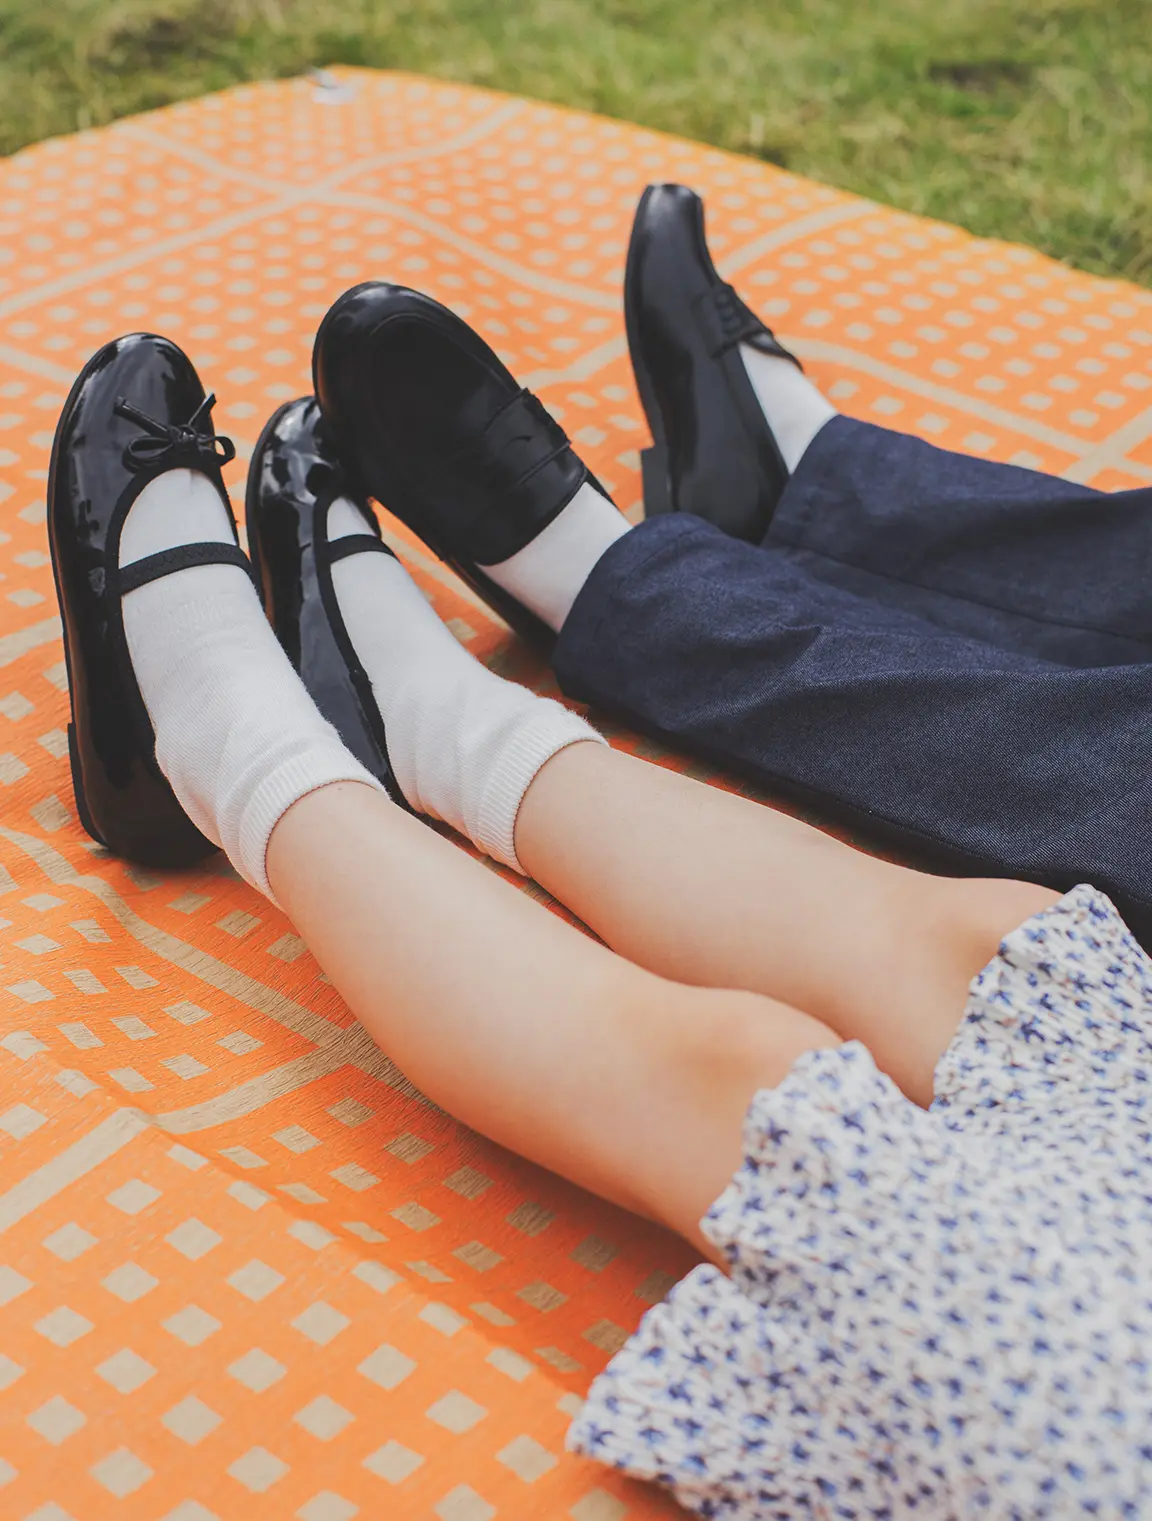 look02のモデル写真。女の子と男の子の足元が写っており、女の子は膝丈のワンピースに黒い靴、男の子はくるぶし丈のパンツに黒い靴を履いている